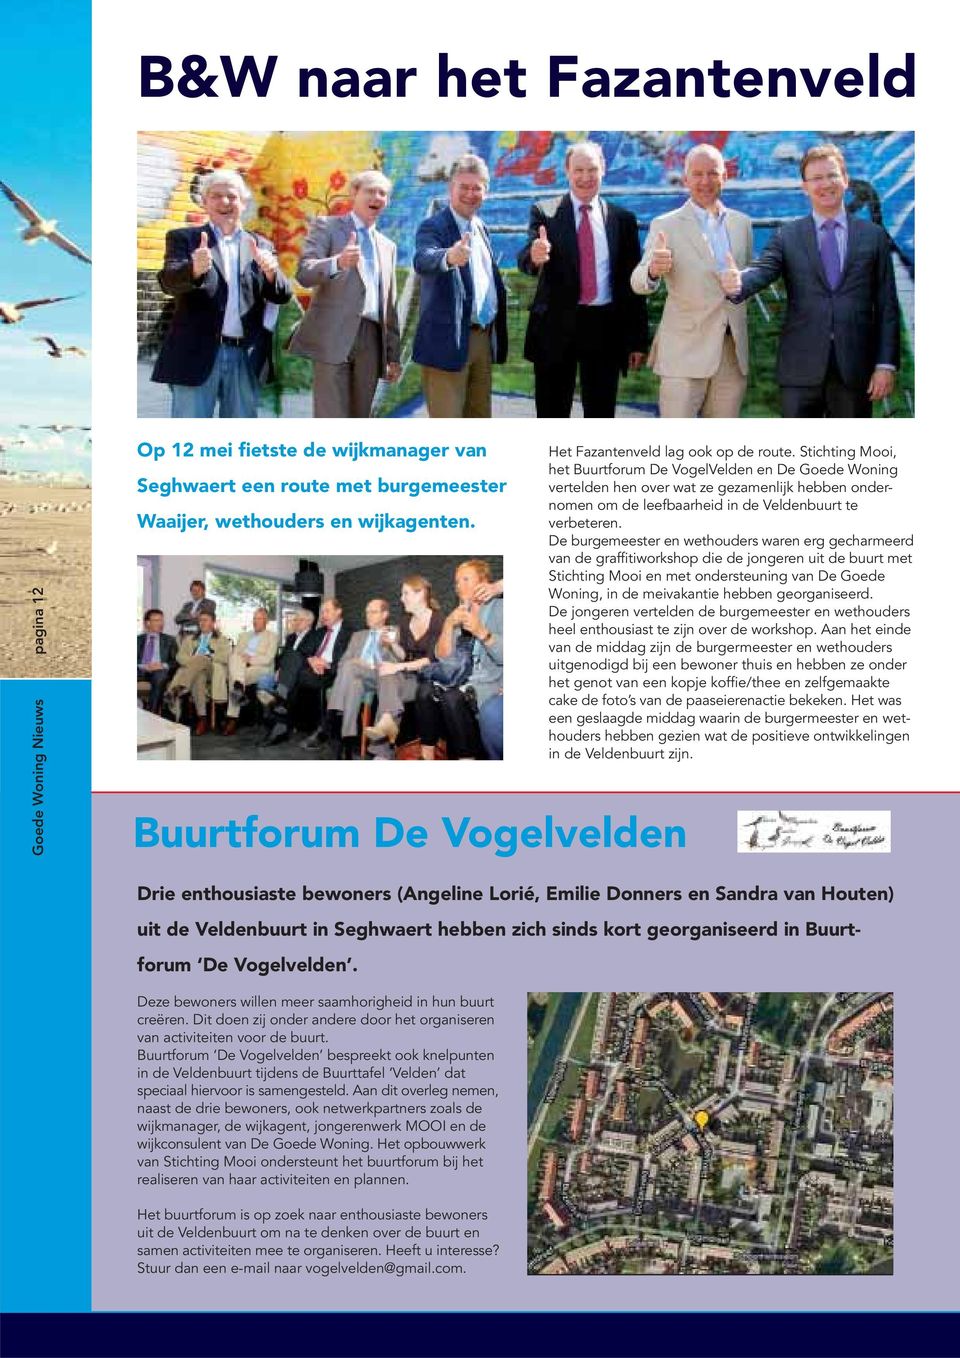 Stichting Mooi, het Buurtforum De VogelVelden en De Goede Woning vertelden hen over wat ze gezamenlijk hebben ondernomen om de leefbaarheid in de Veldenbuurt te verbeteren.